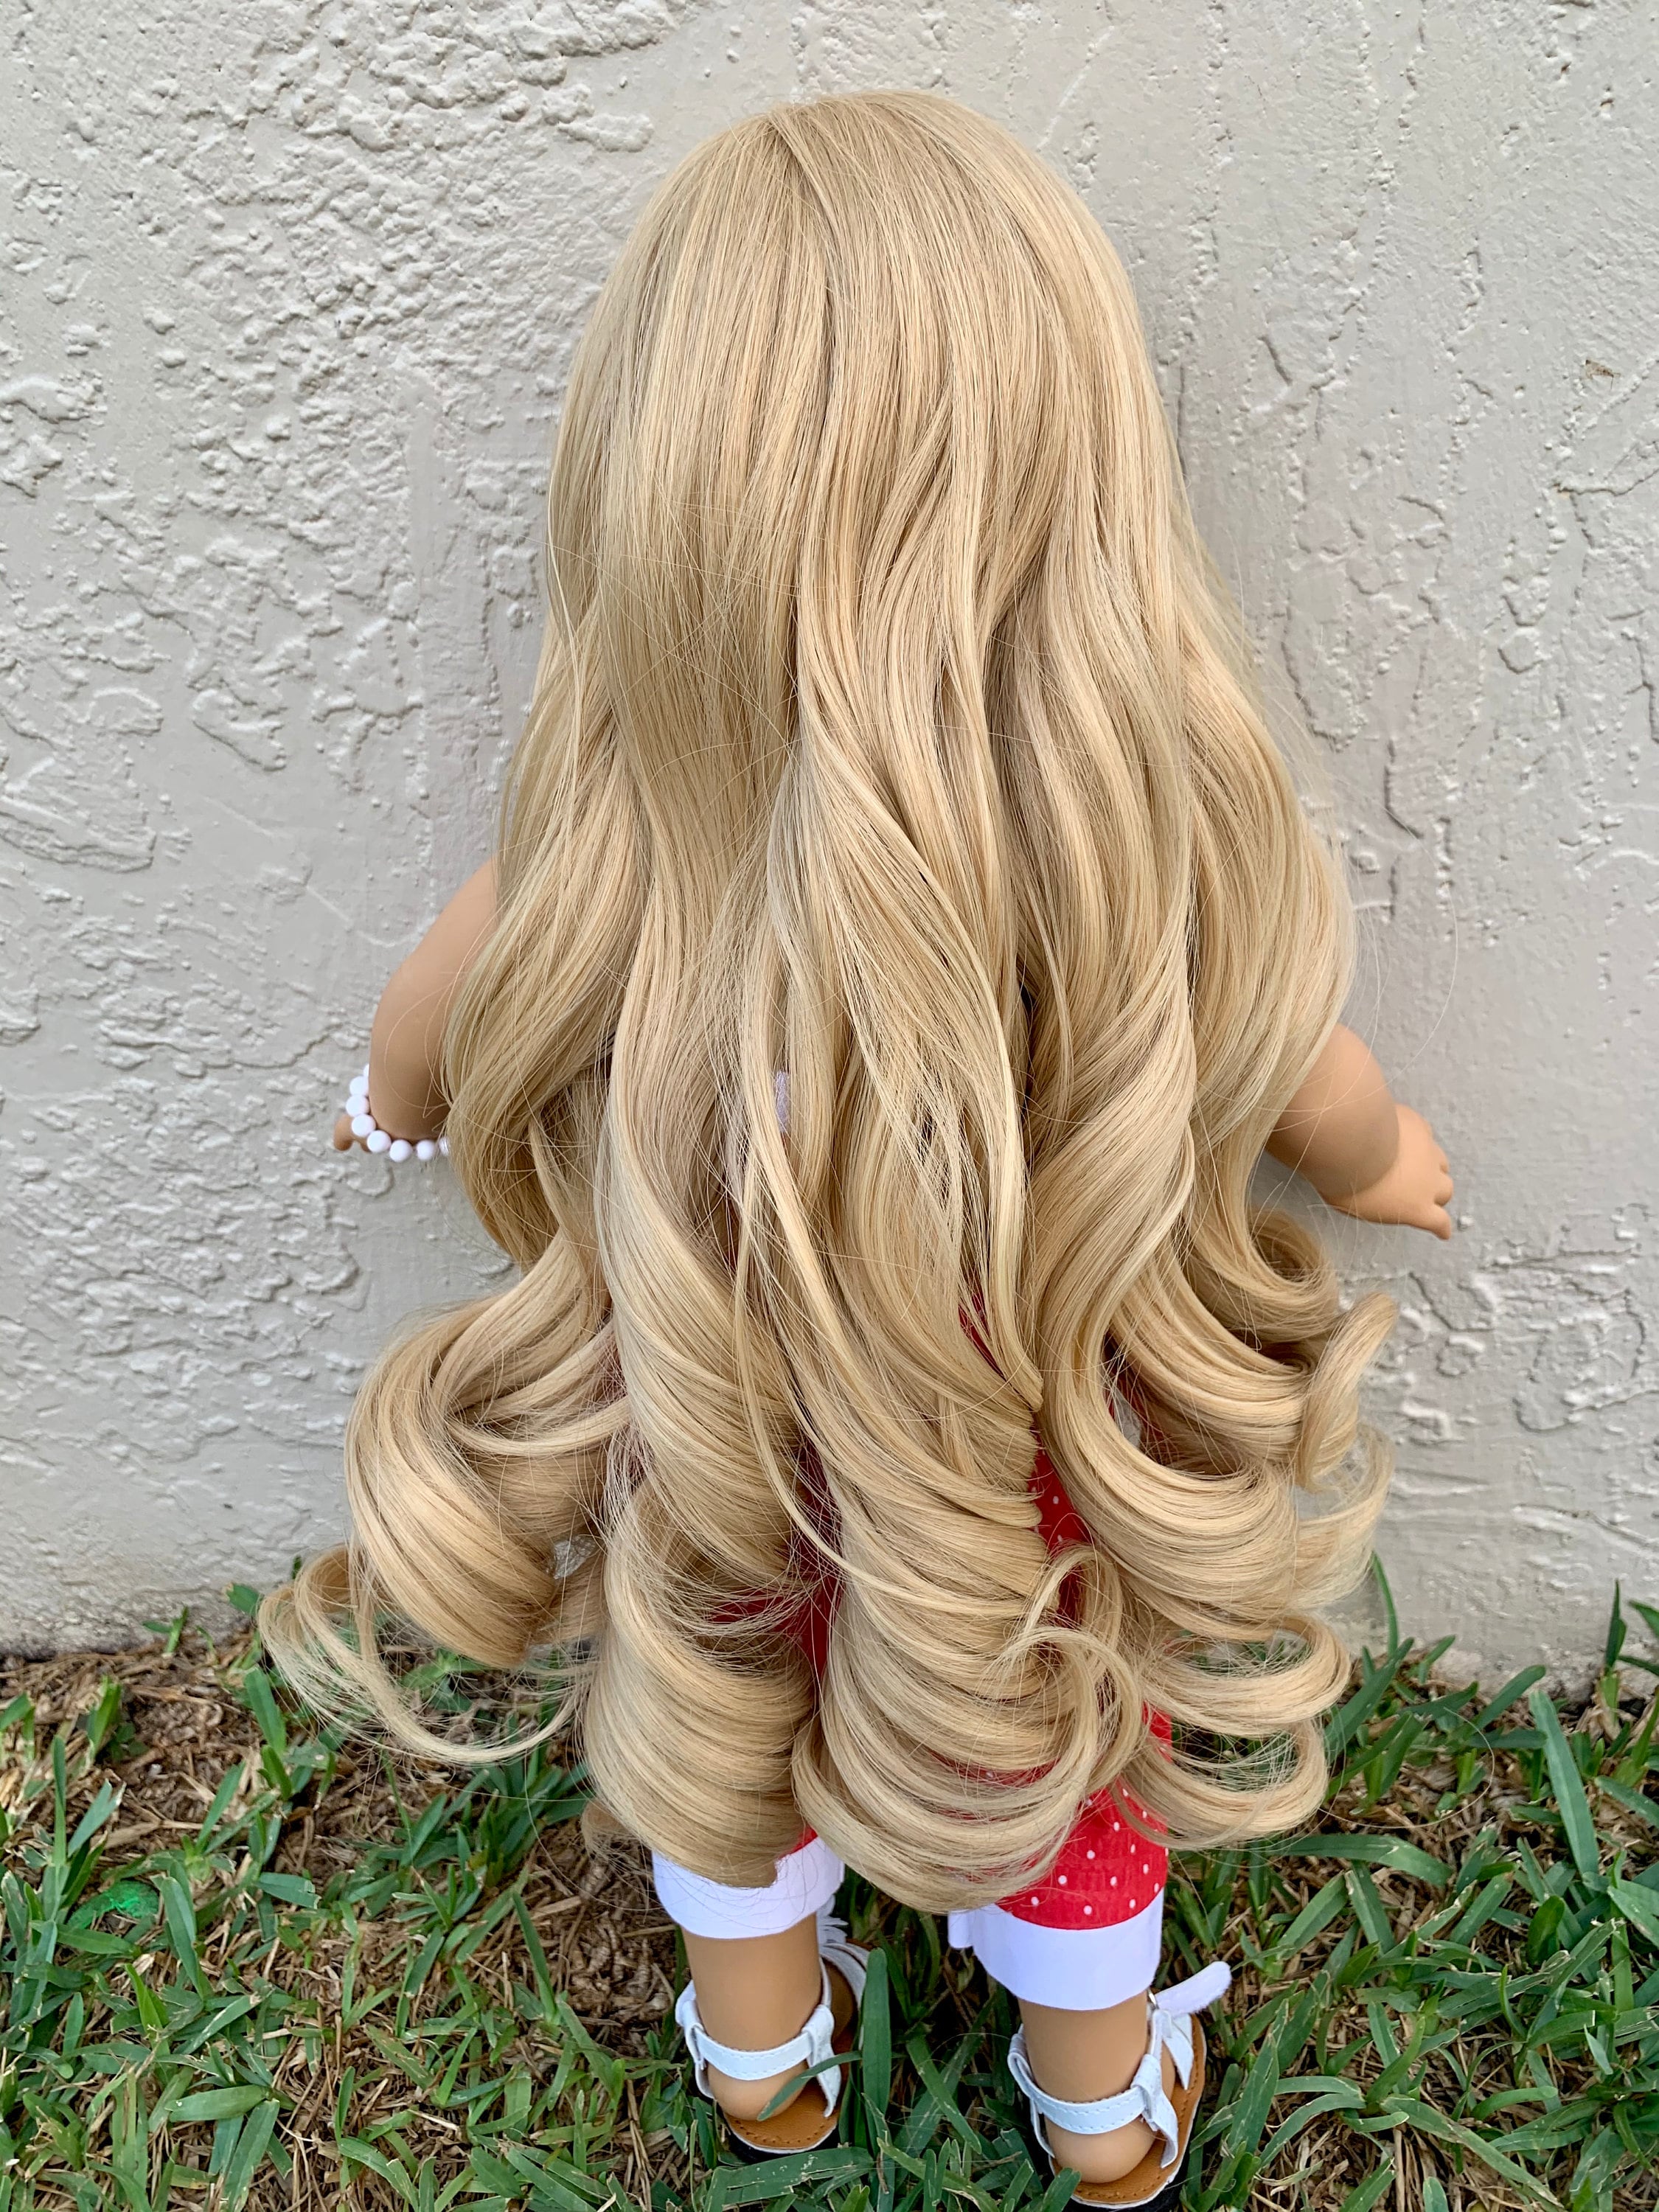 Custom doll wig for 18" American Girl Dolls - Heat Safe - Tangle Resistant - fits 10-11" head size of 18" dolls OG Blythe BJD Gotz Blonde